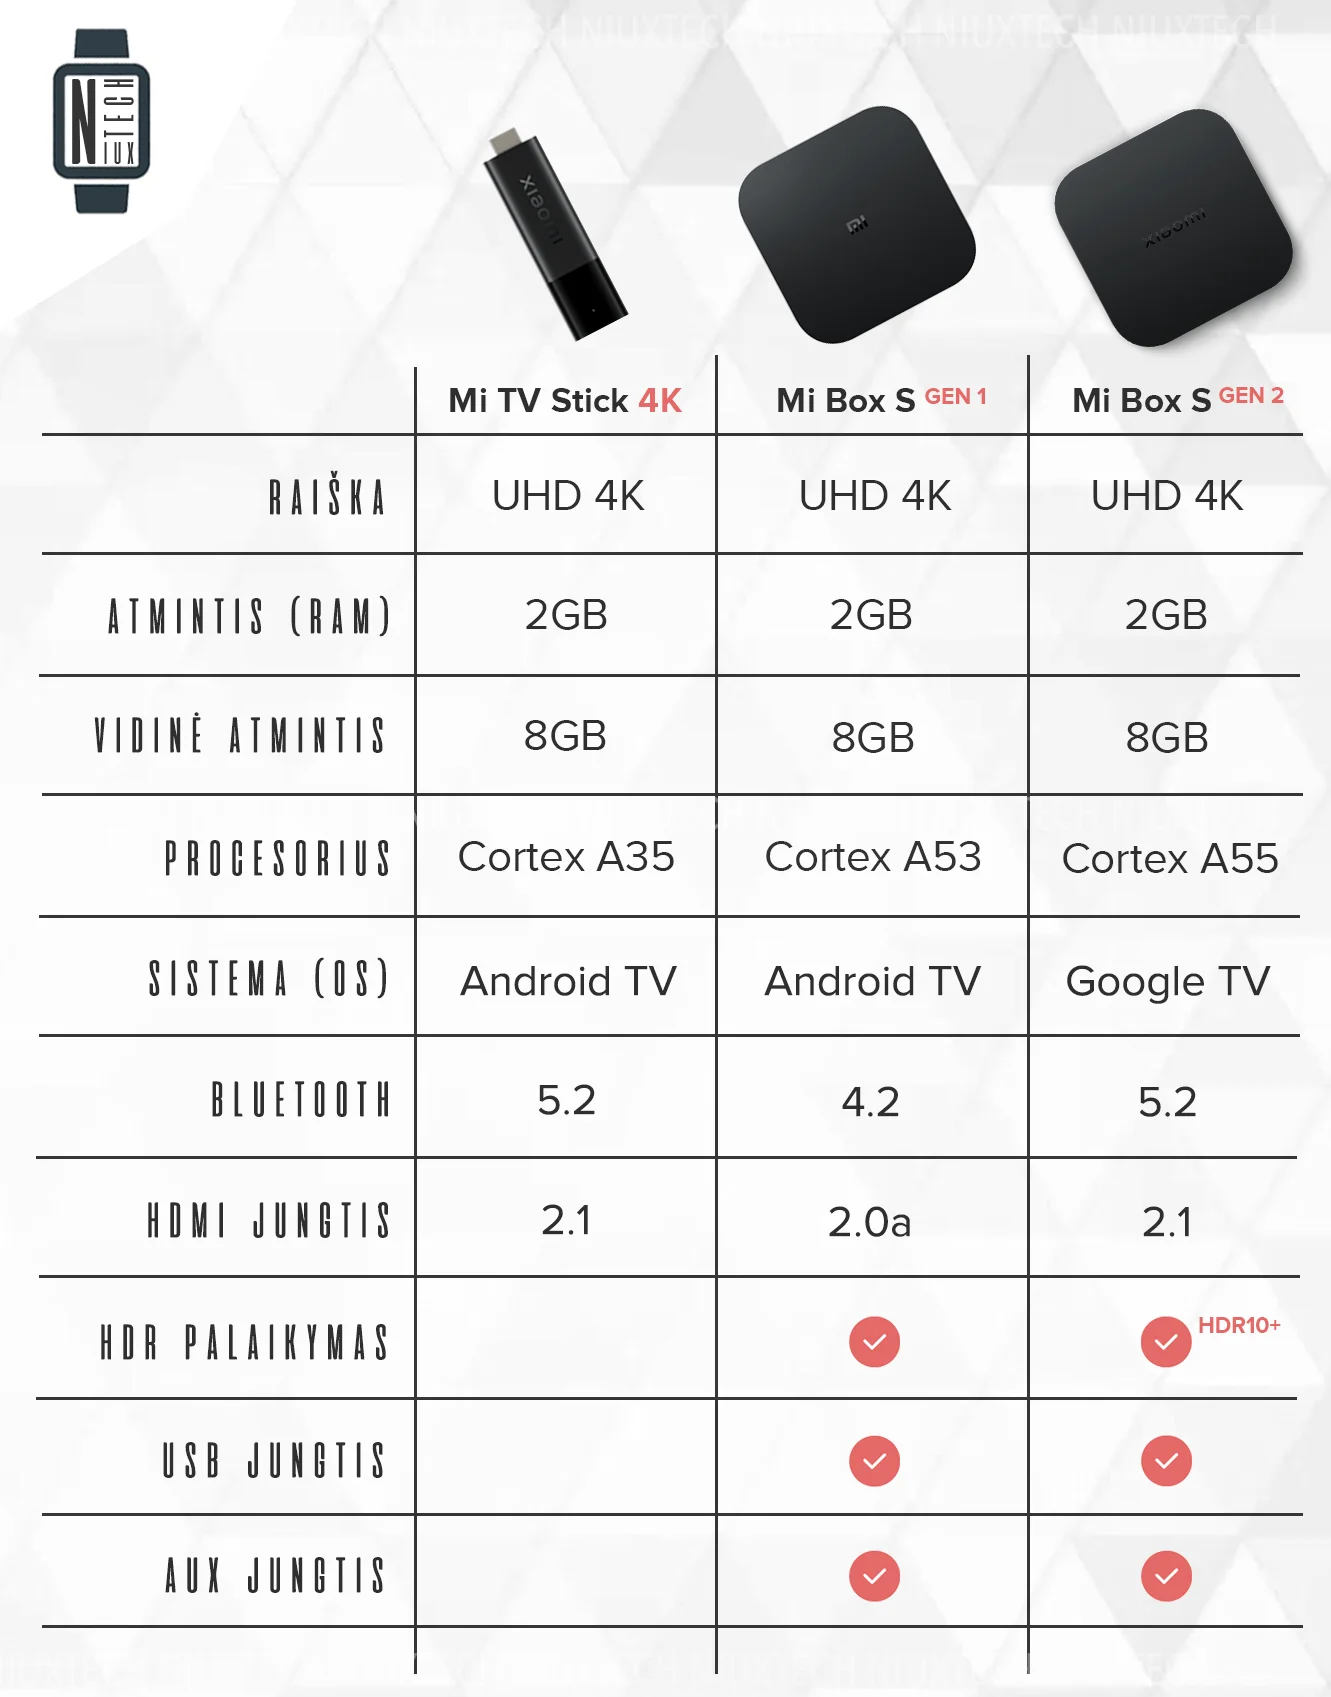 Xiaomi Mi Box S (2nd Gen) vs Mi Box S: Specs and feature